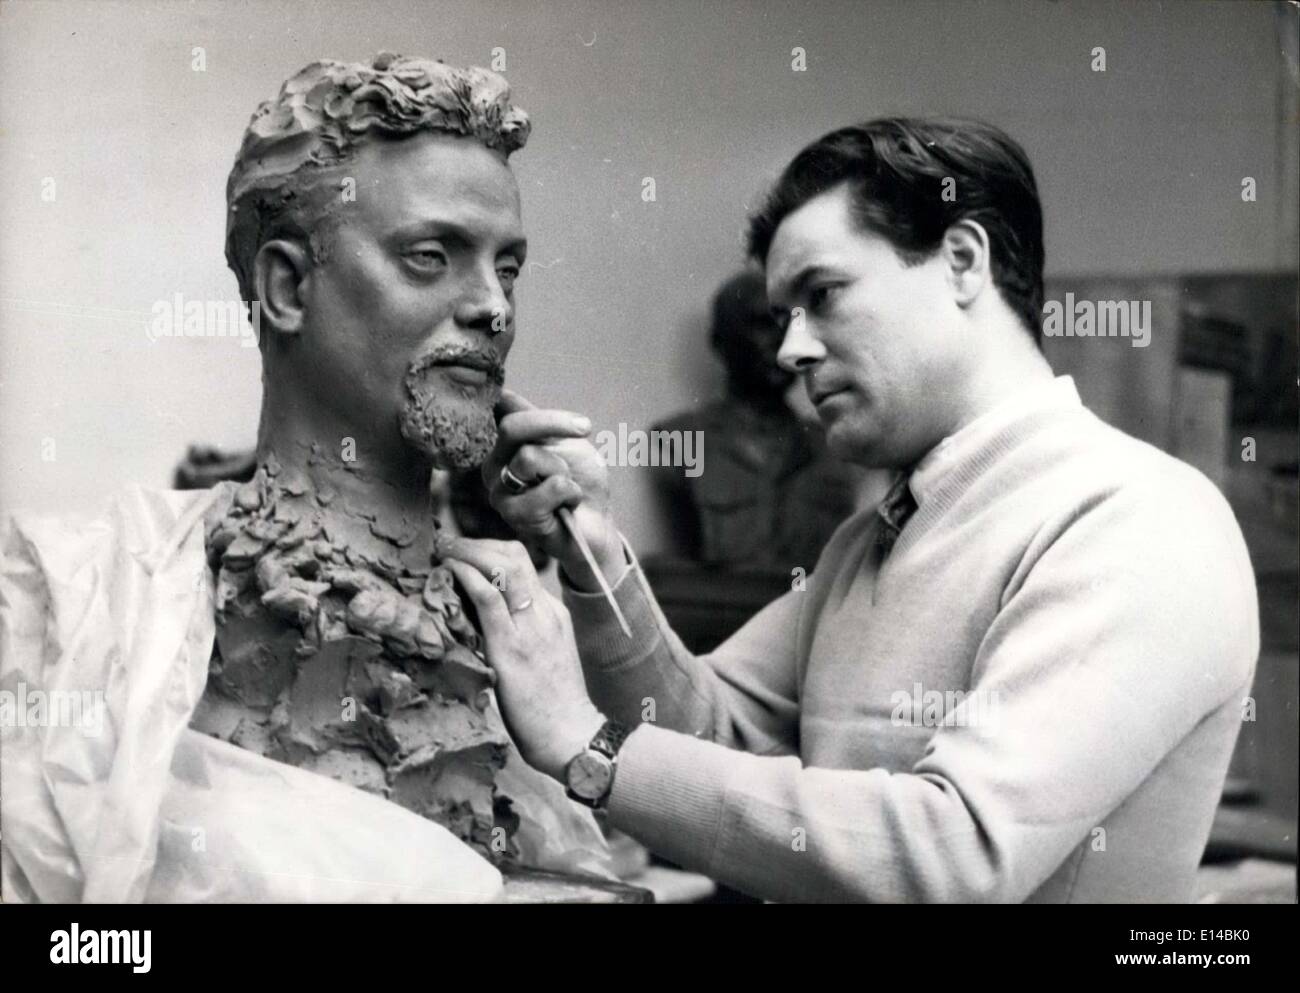 17. April 2012 - Alian bombardieren, haben seine Wachsfigur: M. Barbieri, Te Bildhauer des Musée Grevin Wachsfigur legt den letzten Schliff der Büste zu bombardieren, der neue '' einsame Navigator''. Das Gesicht der Wachsfigur wird nach der Skulptur geformt werden. Stockfoto